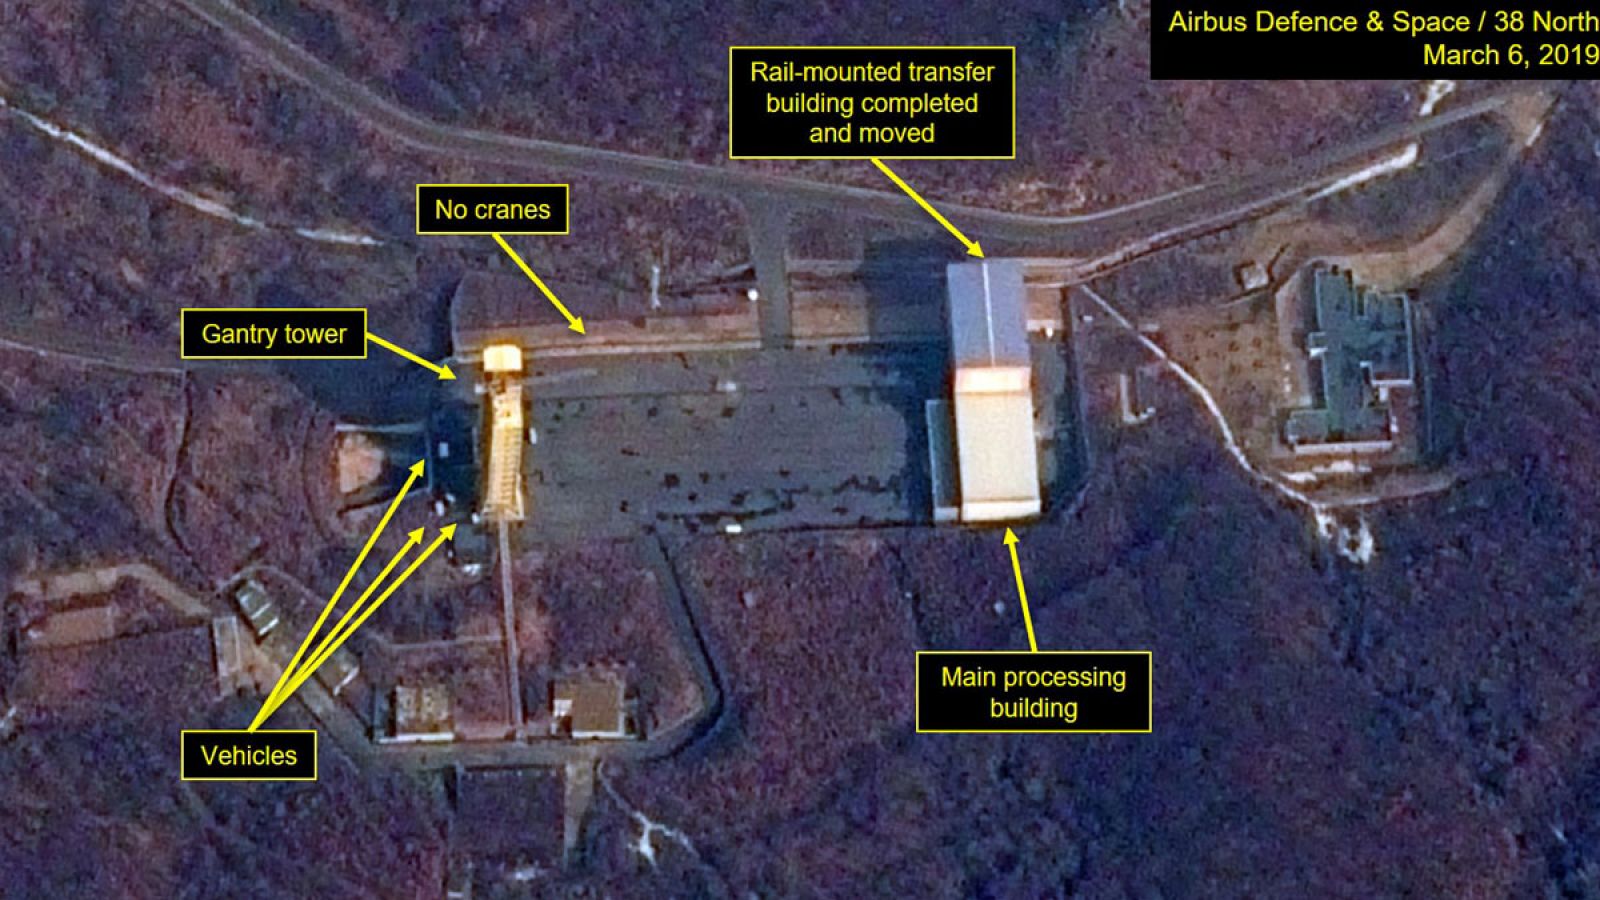 Una de las imágenes por satélite que muestran actividad en la llamada planta de Sanumdong, situada en el distrito de Ryongsong en Pionyang.